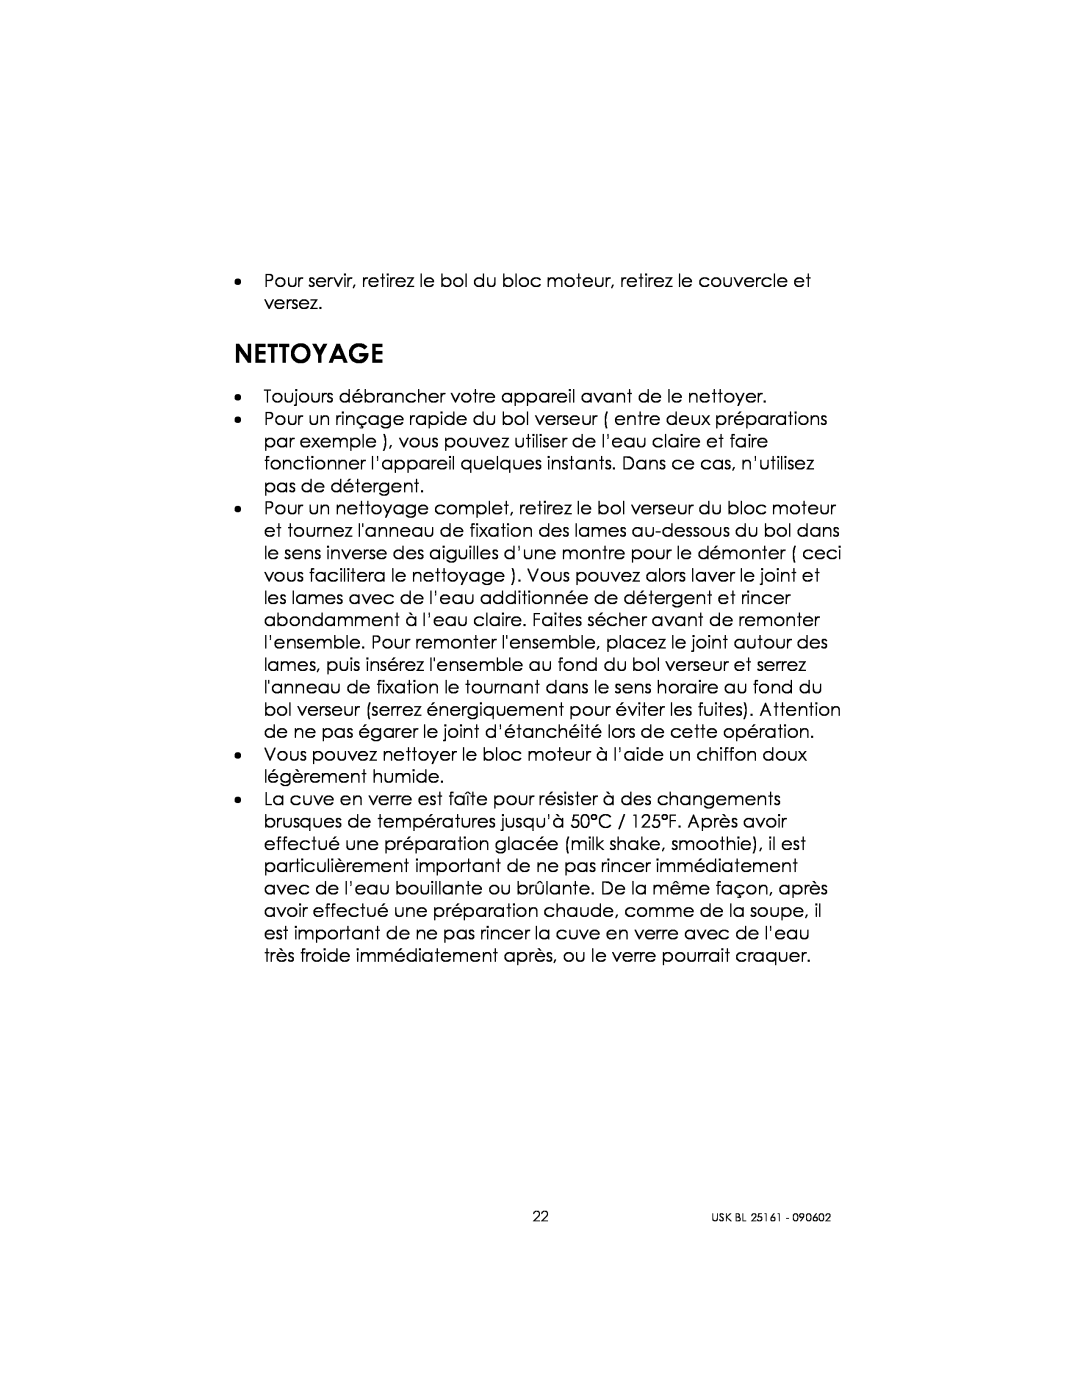 Kalorik usk bl 25161 manual Nettoyage 